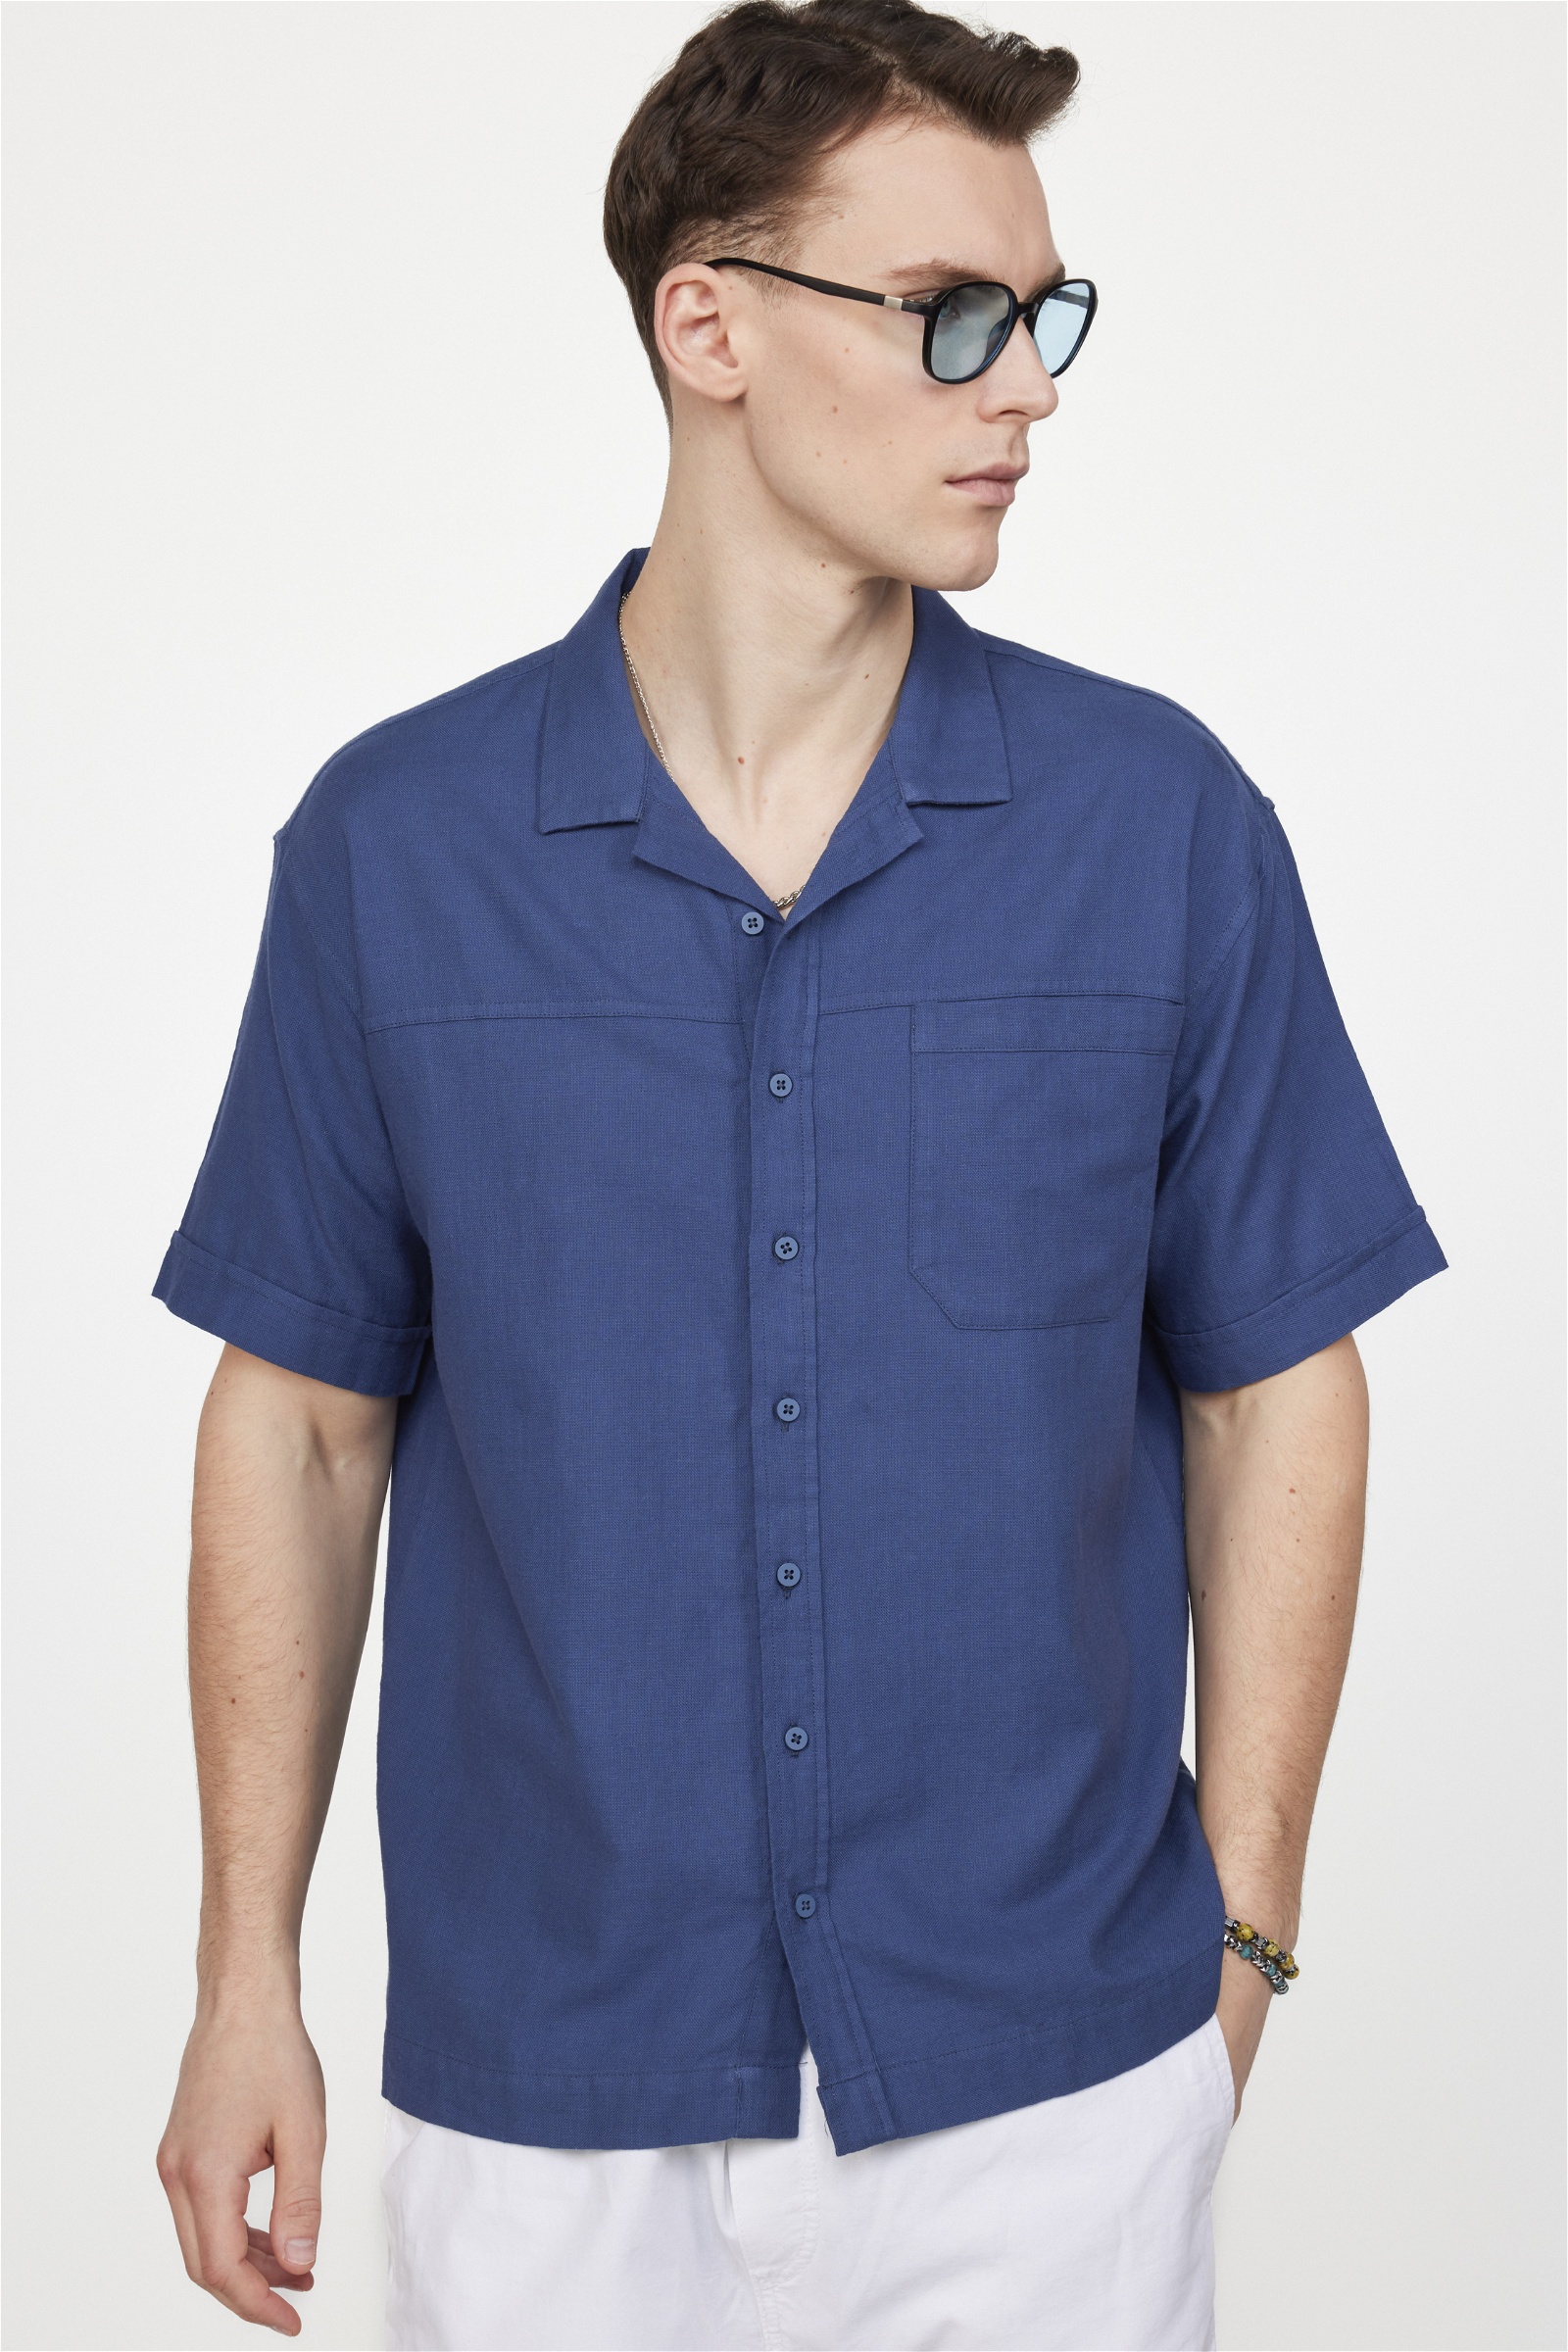 Plain Navy Blue Shirt